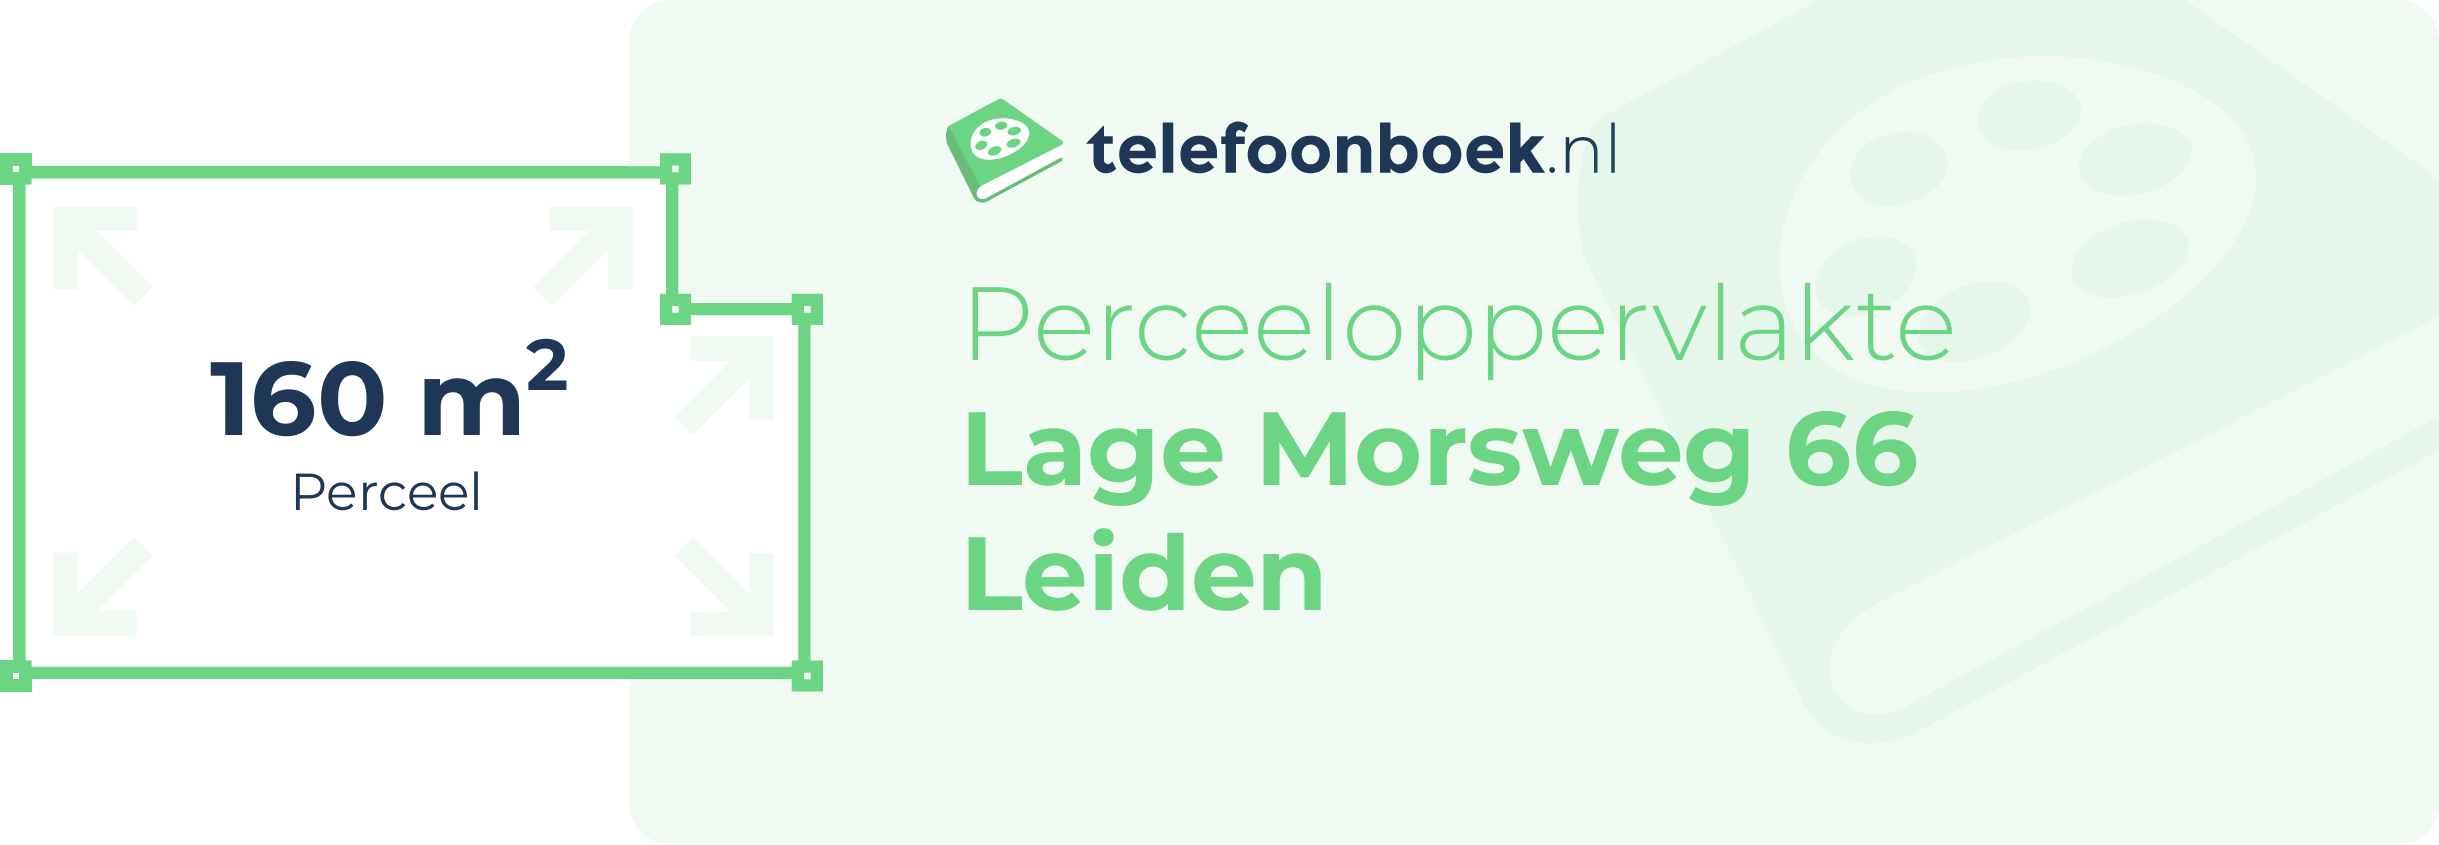 Perceeloppervlakte Lage Morsweg 66 Leiden